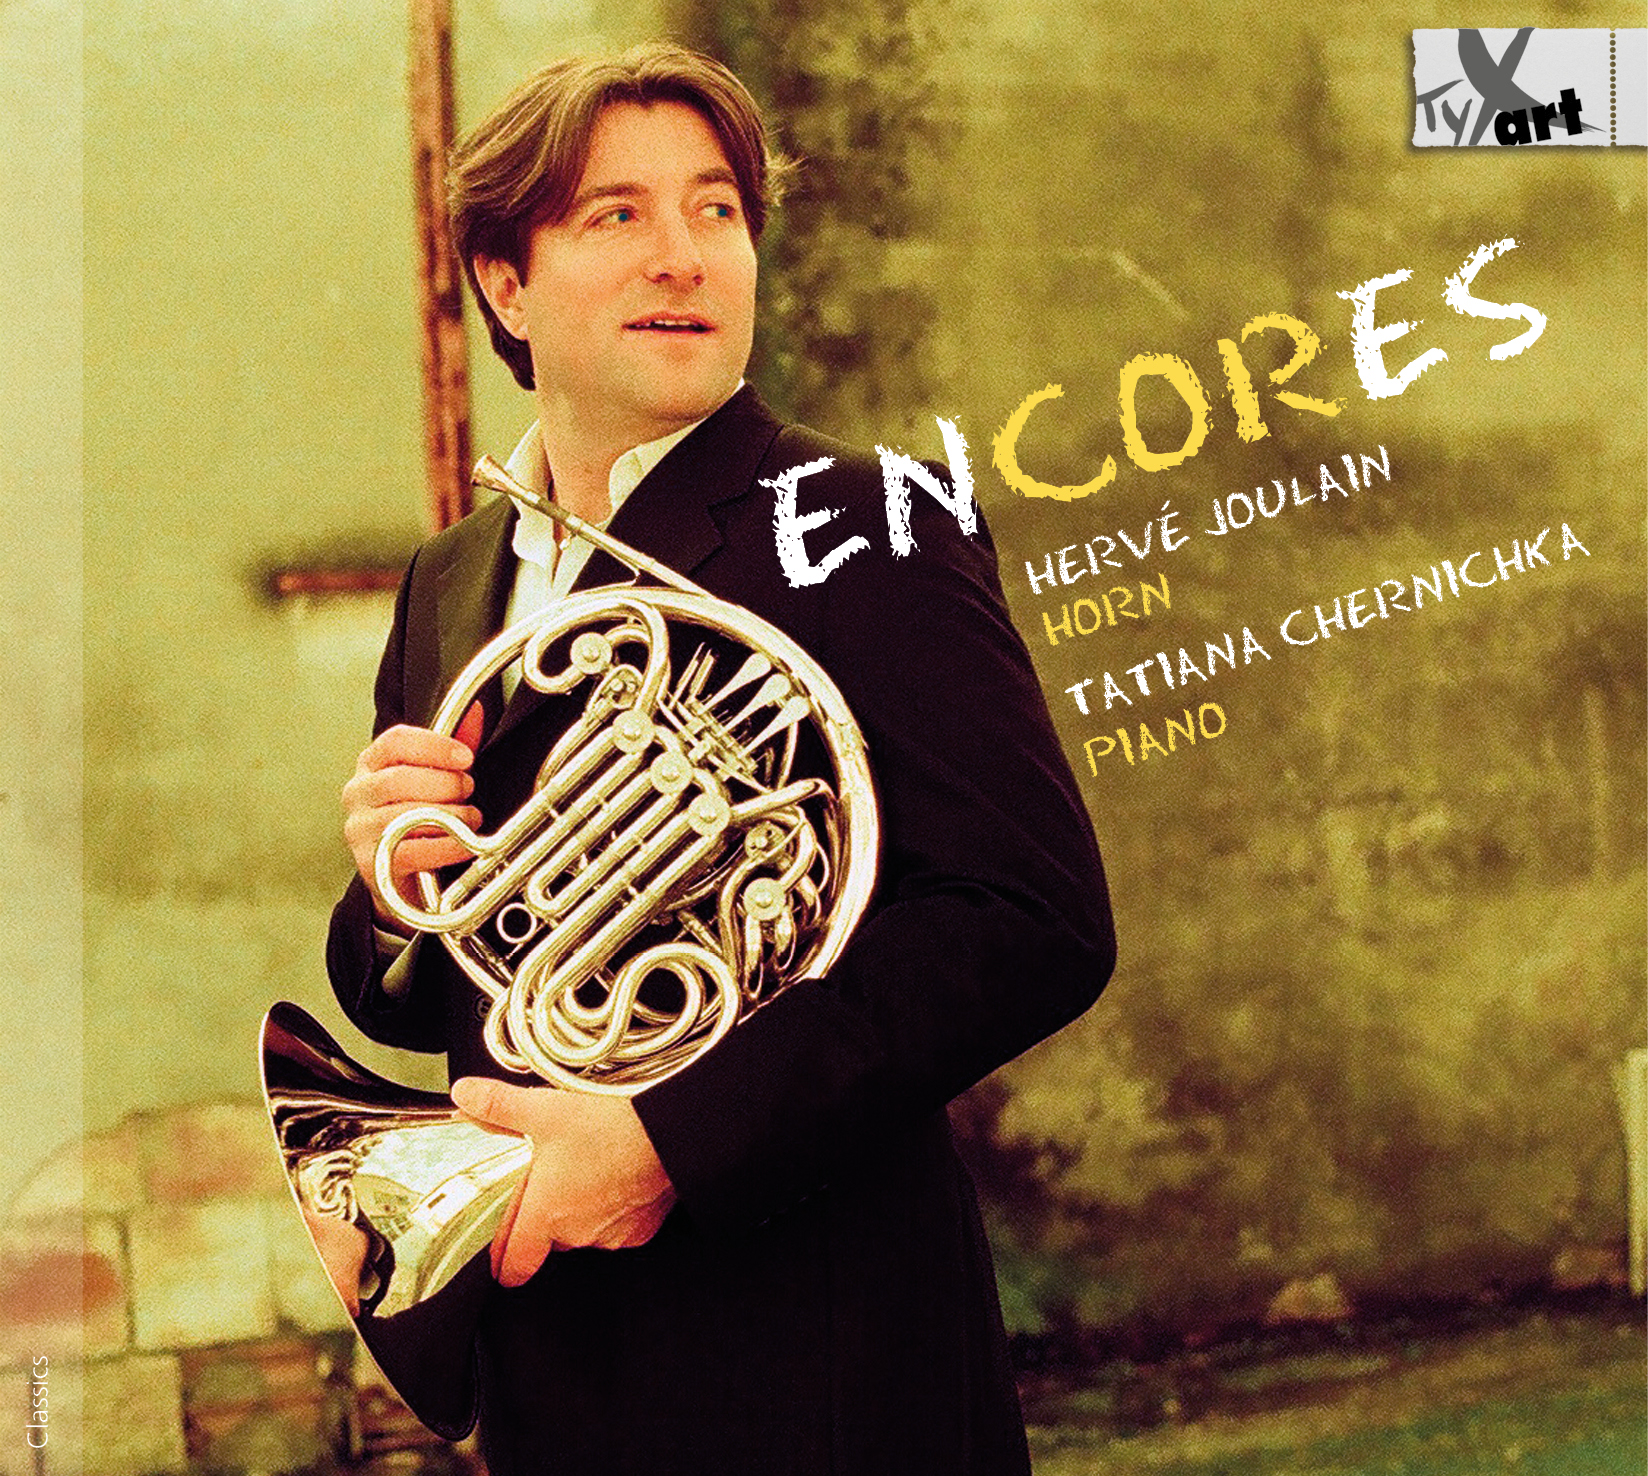 enCORes - Werke für Horn und Klavier + special guests - Hervé Joulain und Tatiana Chernichka